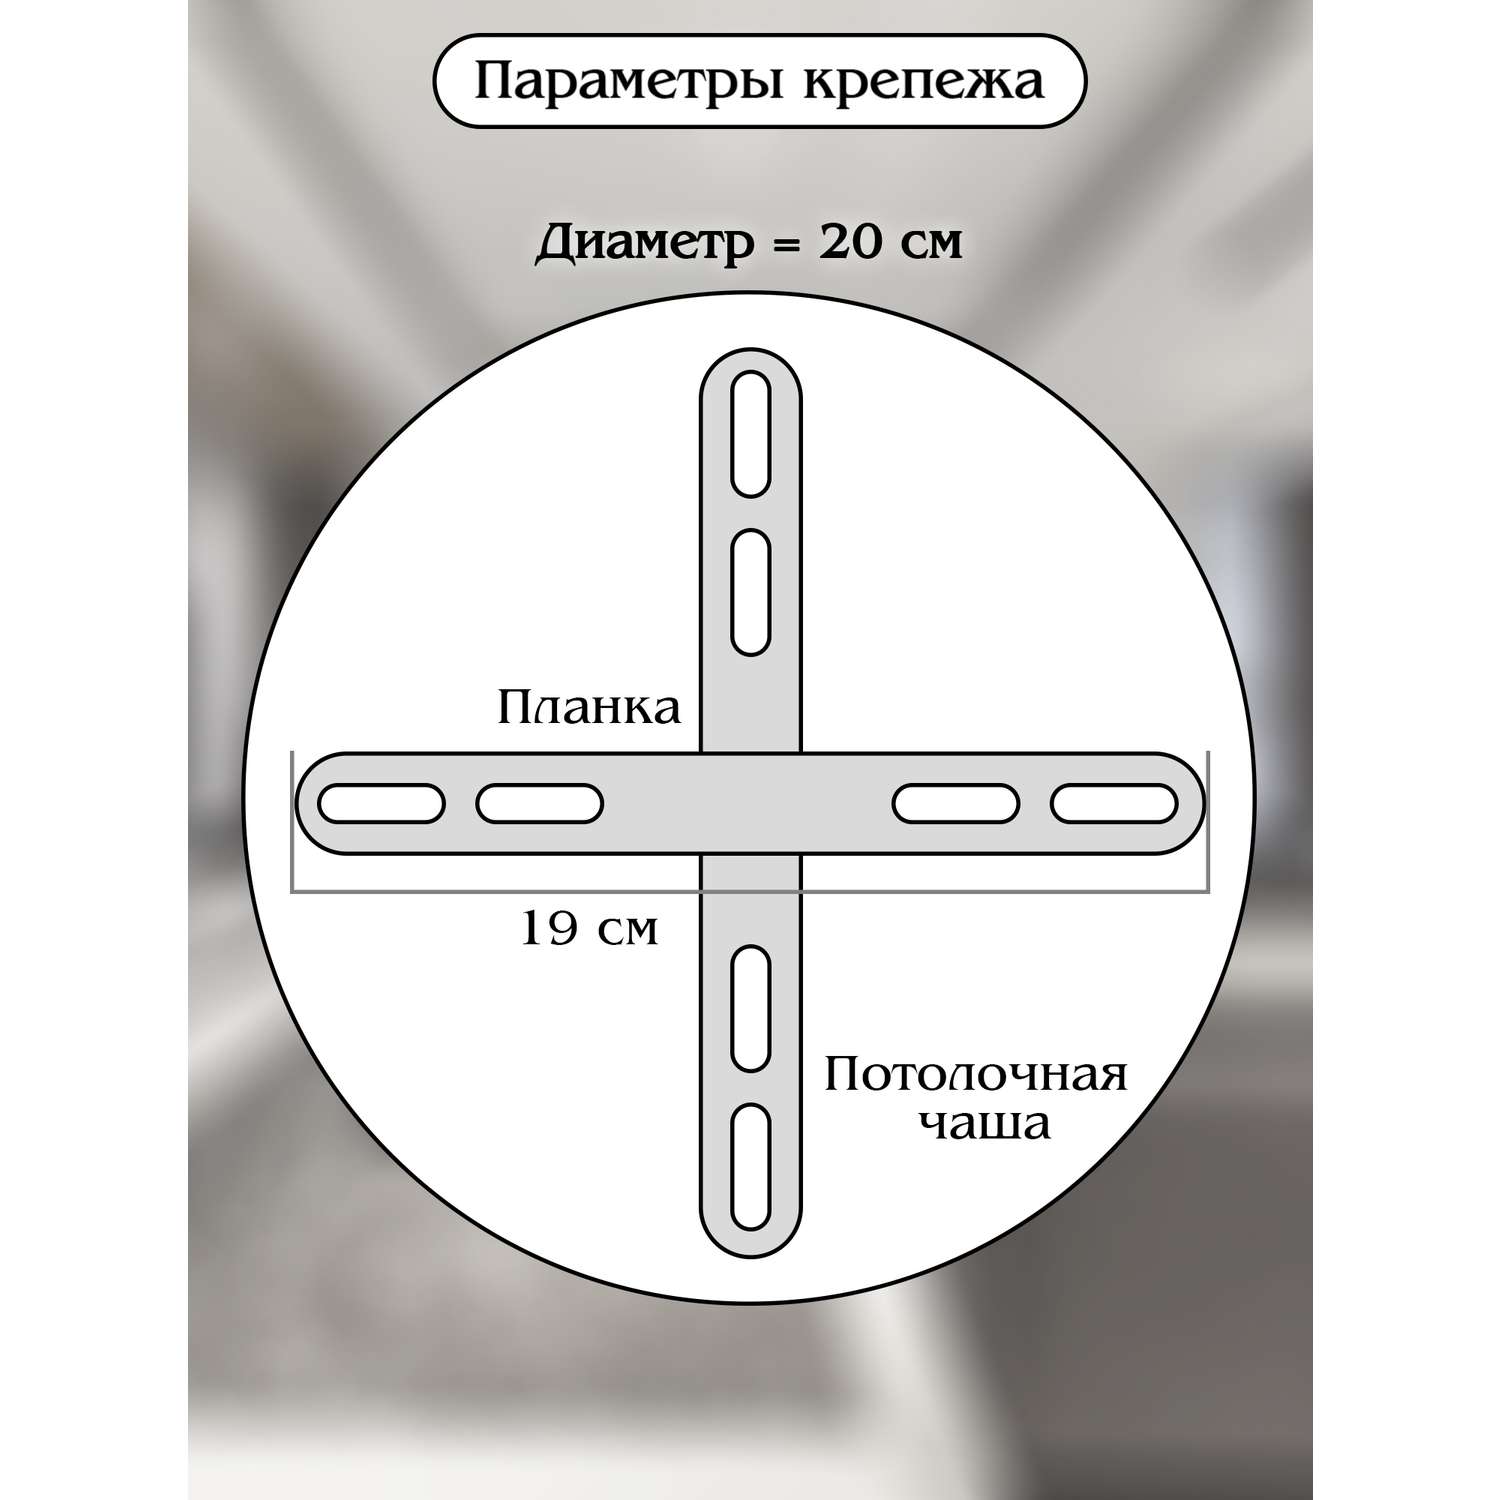 Светодиодный светильник NATALI KOVALTSEVA люстра двойной нимб 120W черный LED - фото 7